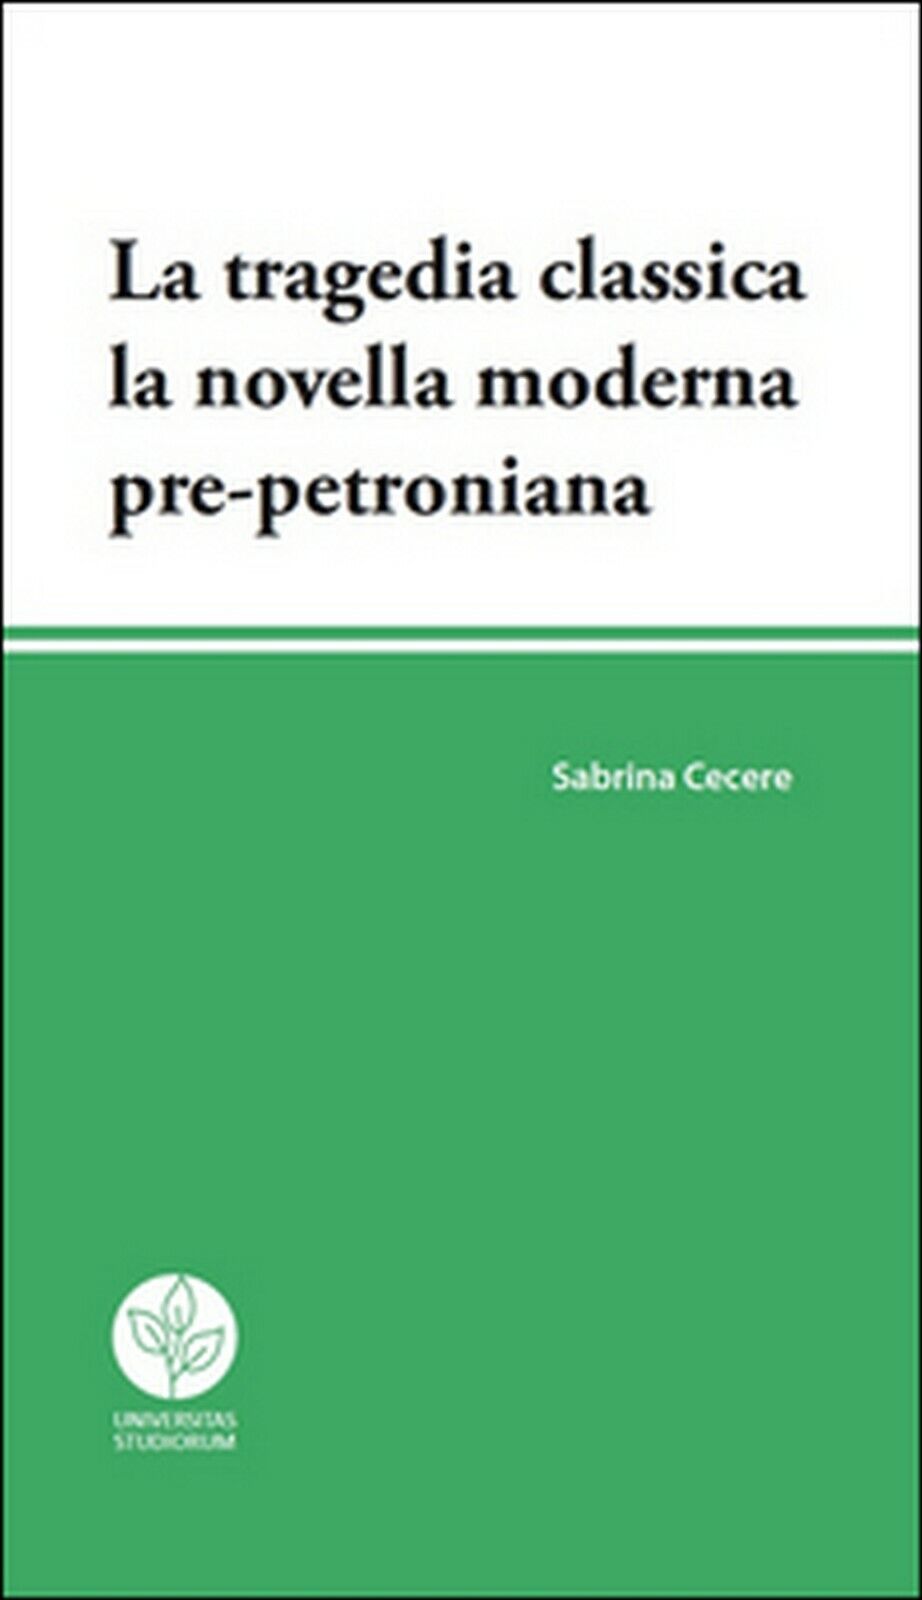 La tragedia classica. La novella moderna pre-petroniana, Sabrina Cecere,  2016 libro usato